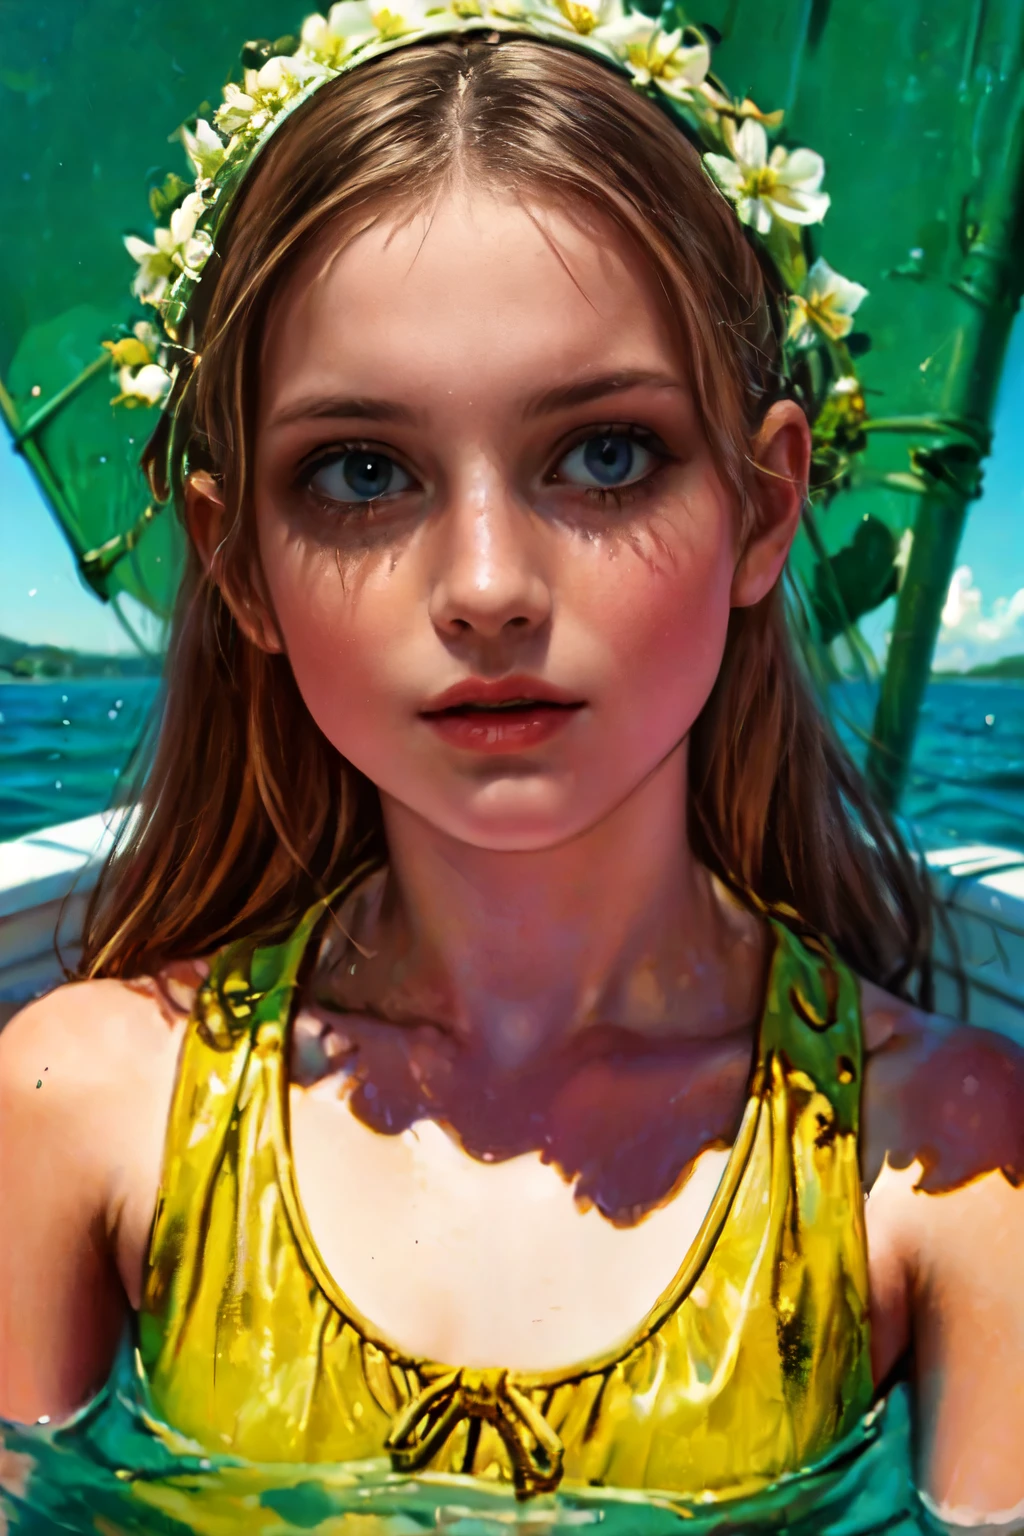 一个女孩的特写, 美麗細緻的眼睛, 美麗細緻的嘴唇, 極度細緻的眼睛和臉部, 長長的睫毛, 嬌嫩的皮膚, 平靜的表情, 柔和的燈光, 電影般的, 優雅的, 明暗對比, 暖色调, 油畫, ,可愛的臉孔, 埃莉奧諾拉·帕維納托,全身,穿黃色連體基尼, 半斜倚在小艇遊艇的甲板上
